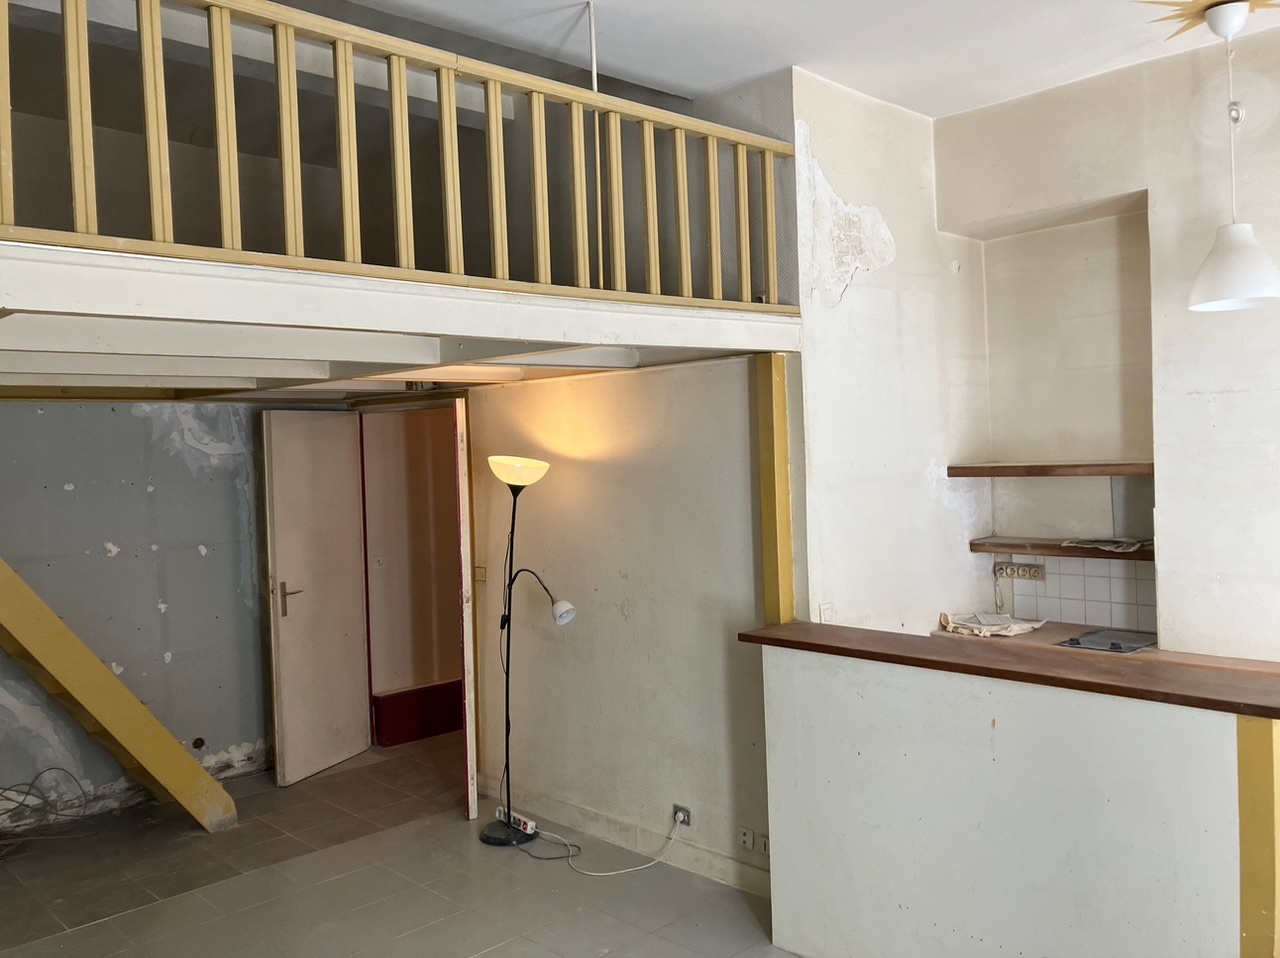 Bonne affaire : appartement à moderniser de 45 M² au coeur des Abbesses à Monamrtre ! 2